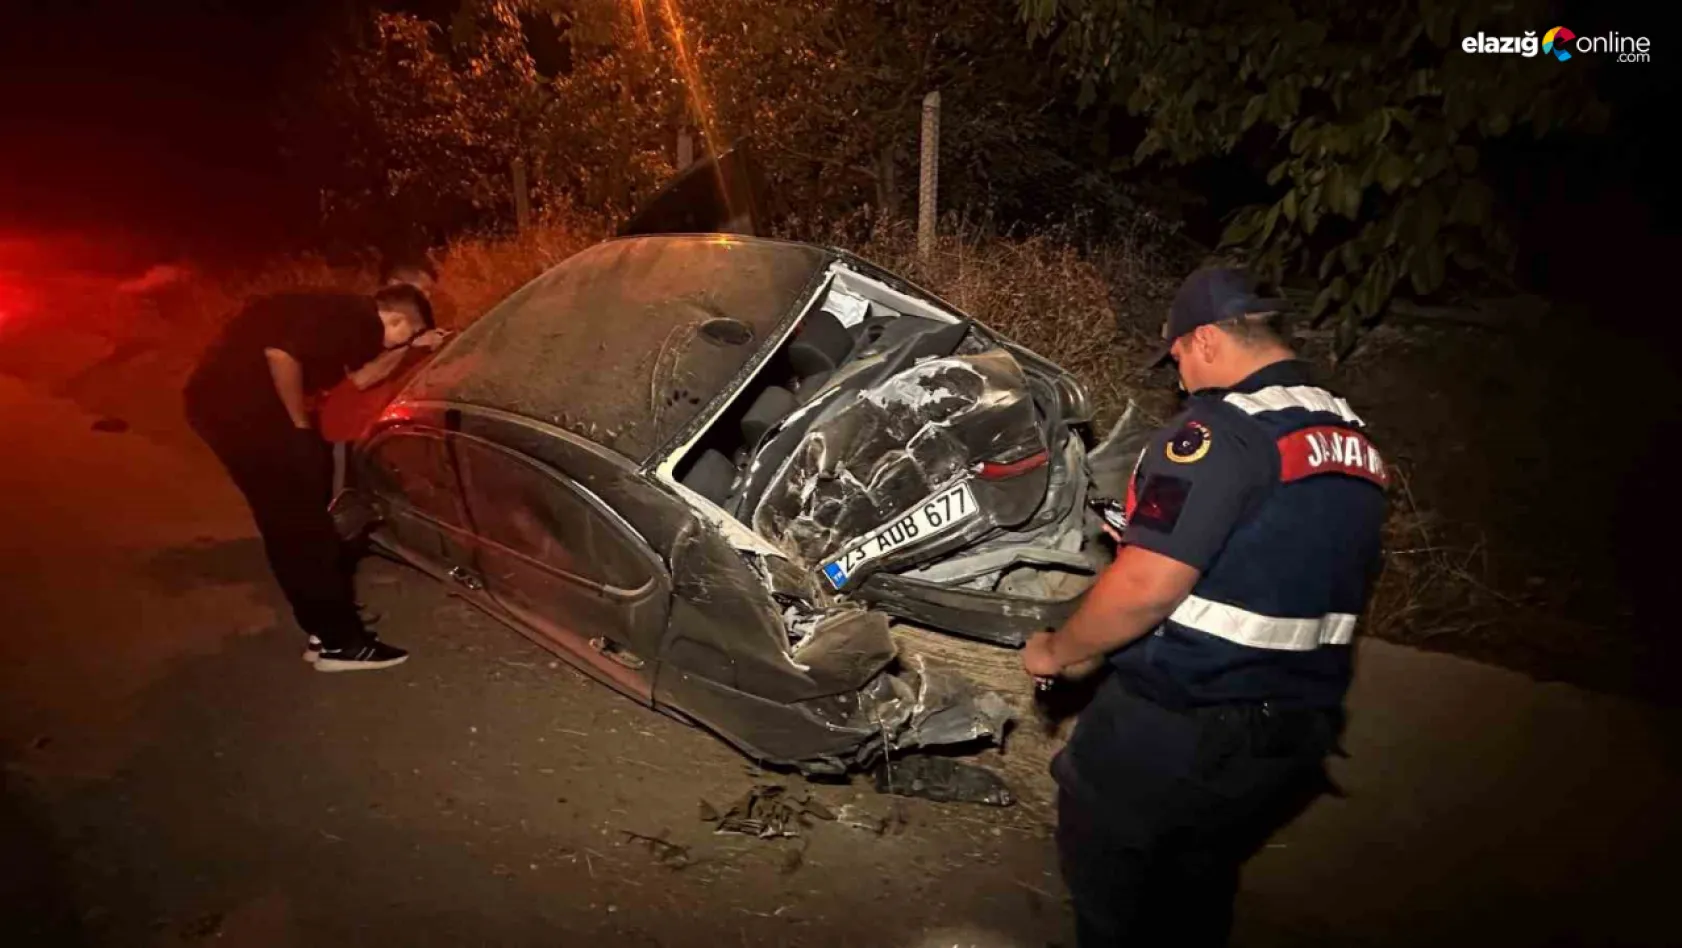 Elazığ'da trafik kazası! 3 kişi yaralandı, 2'si ağır